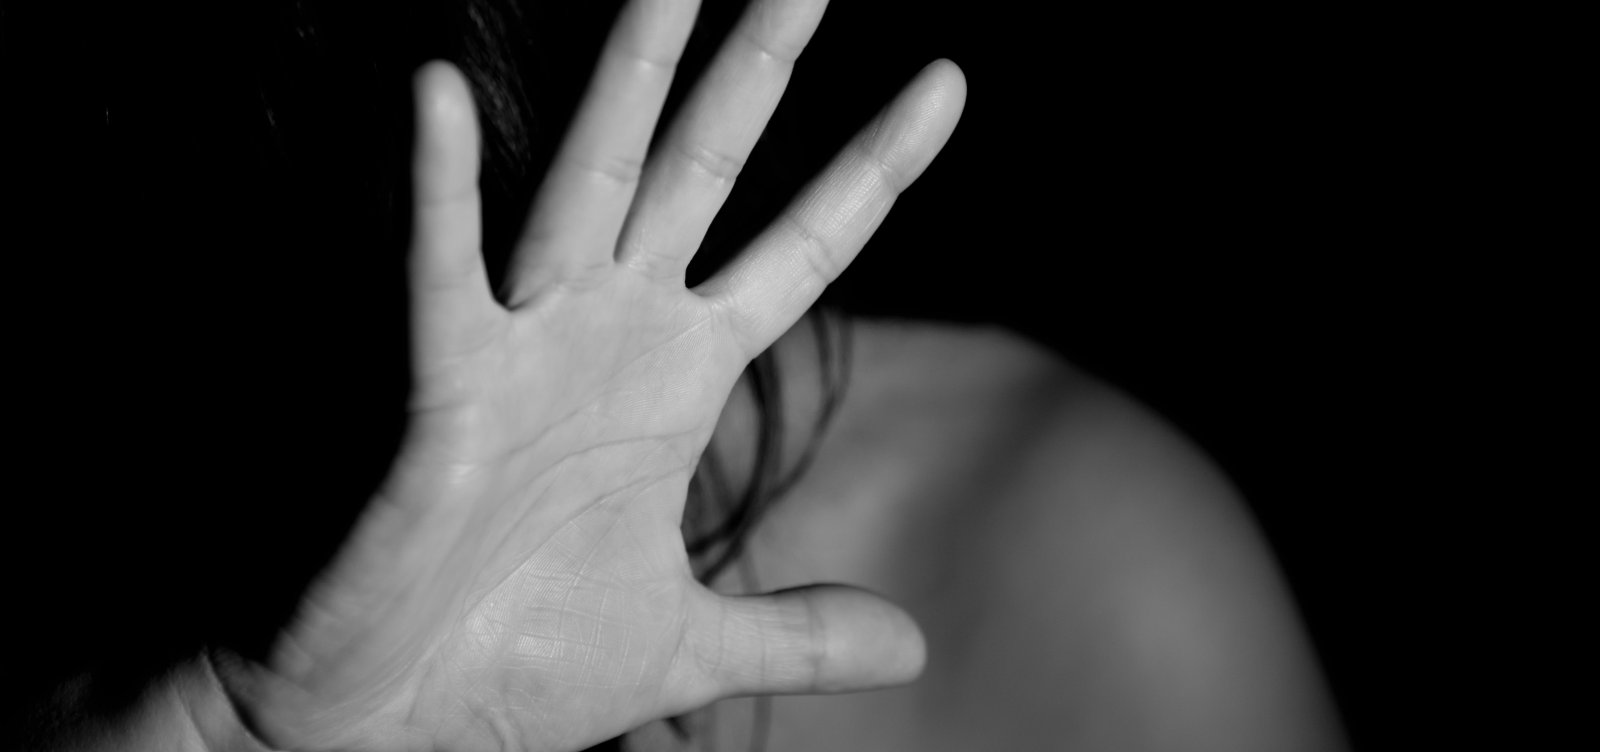 ONG internacional diz que Brasil enfrenta epidemia de violência doméstica